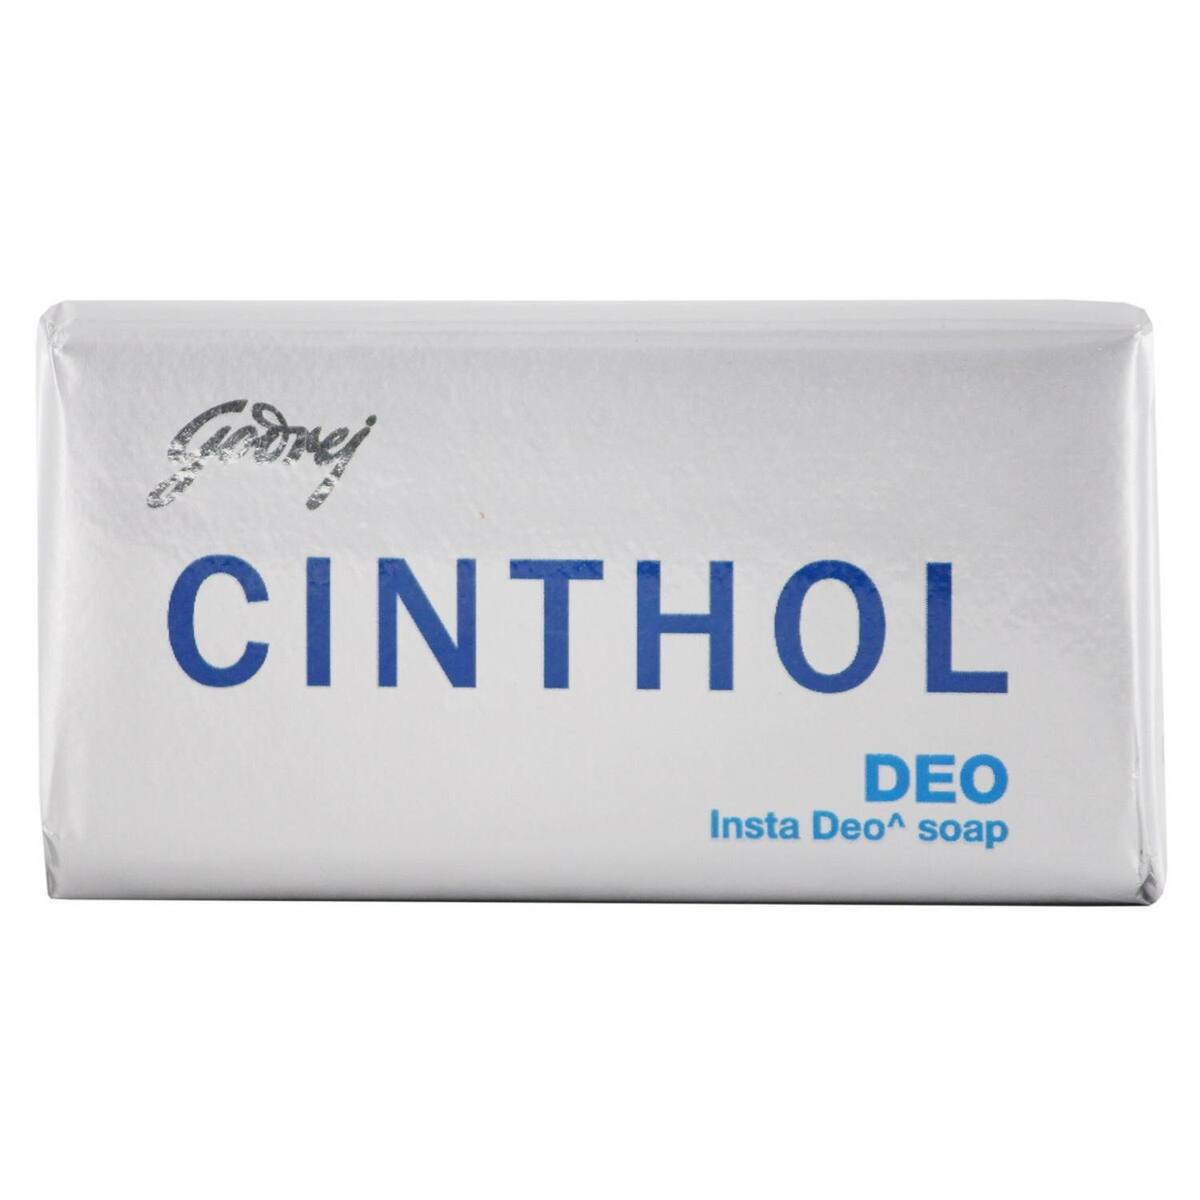 Cinthol Soap Deo 100g